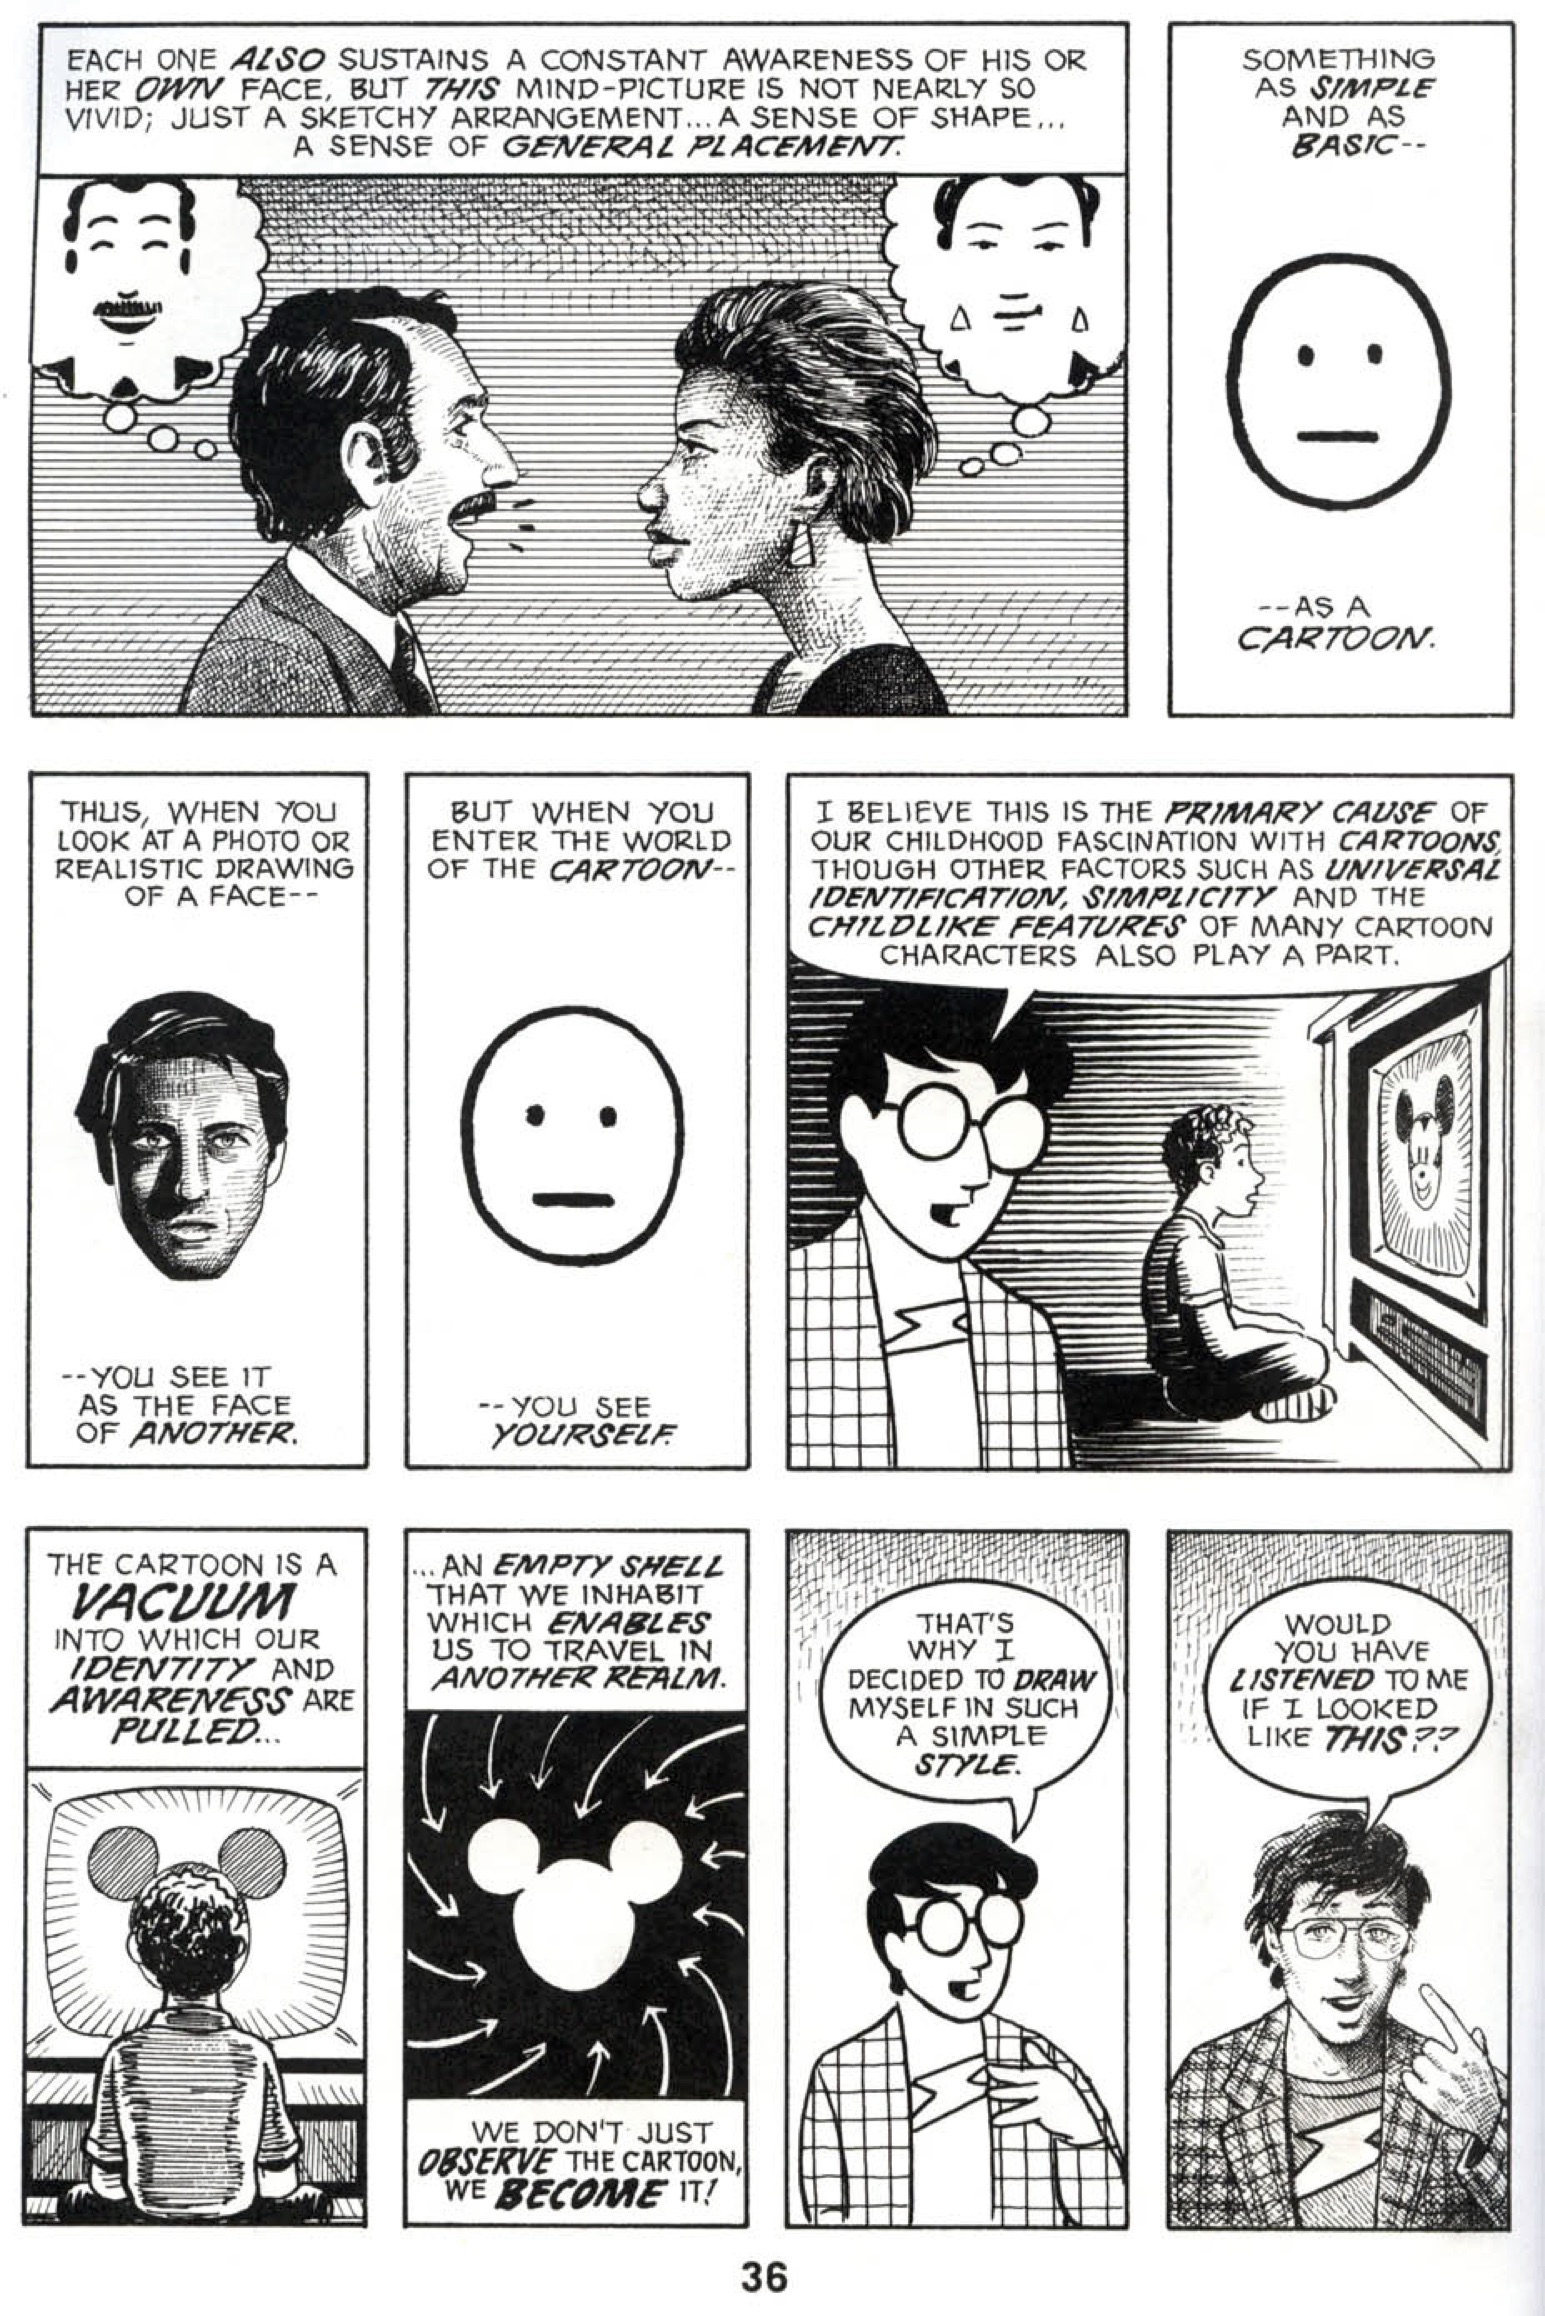 McCloud, S. (1994). Understanding Comics.